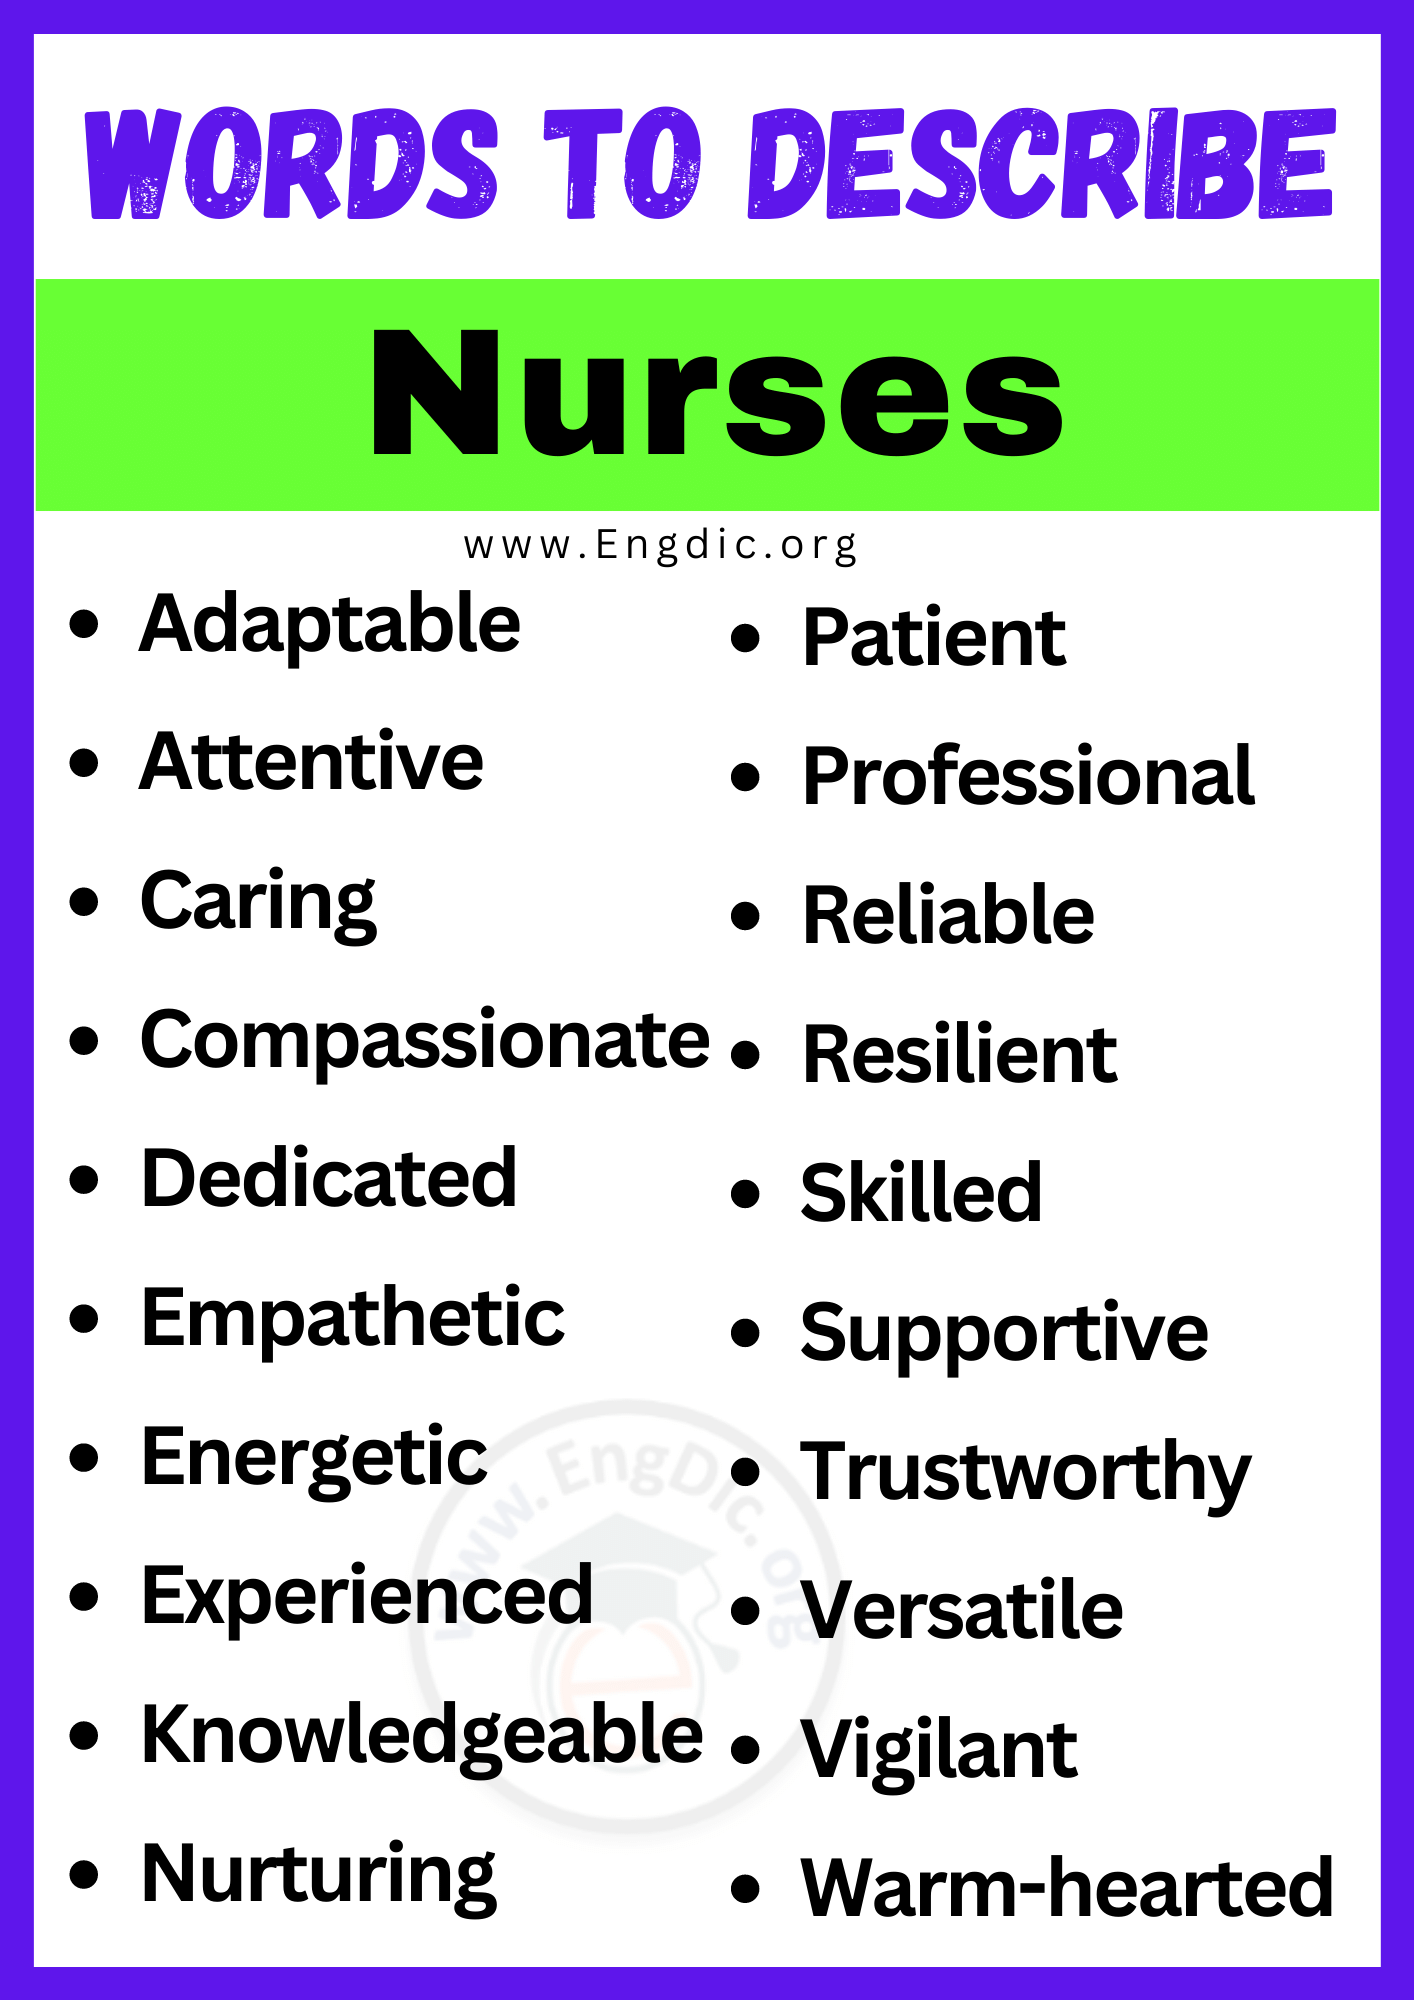 Words to Describe Nurses